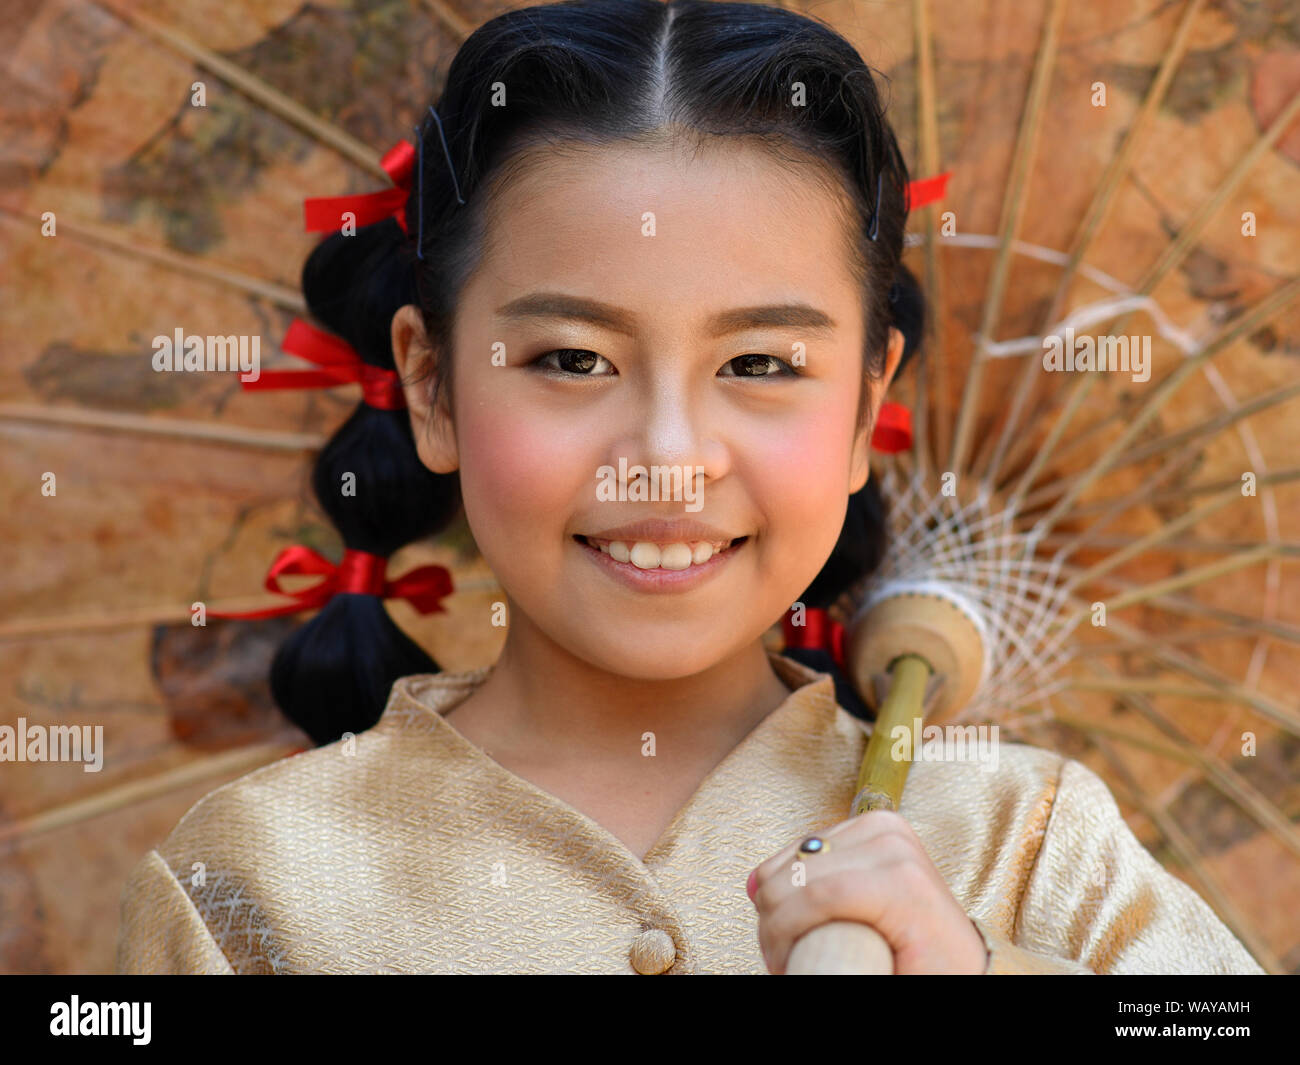 Dressed-up Pré-ado Thai girl with red hair pose des rubans pour l'appareil photo sous un parasol en papier-huile chinoise. Banque D'Images